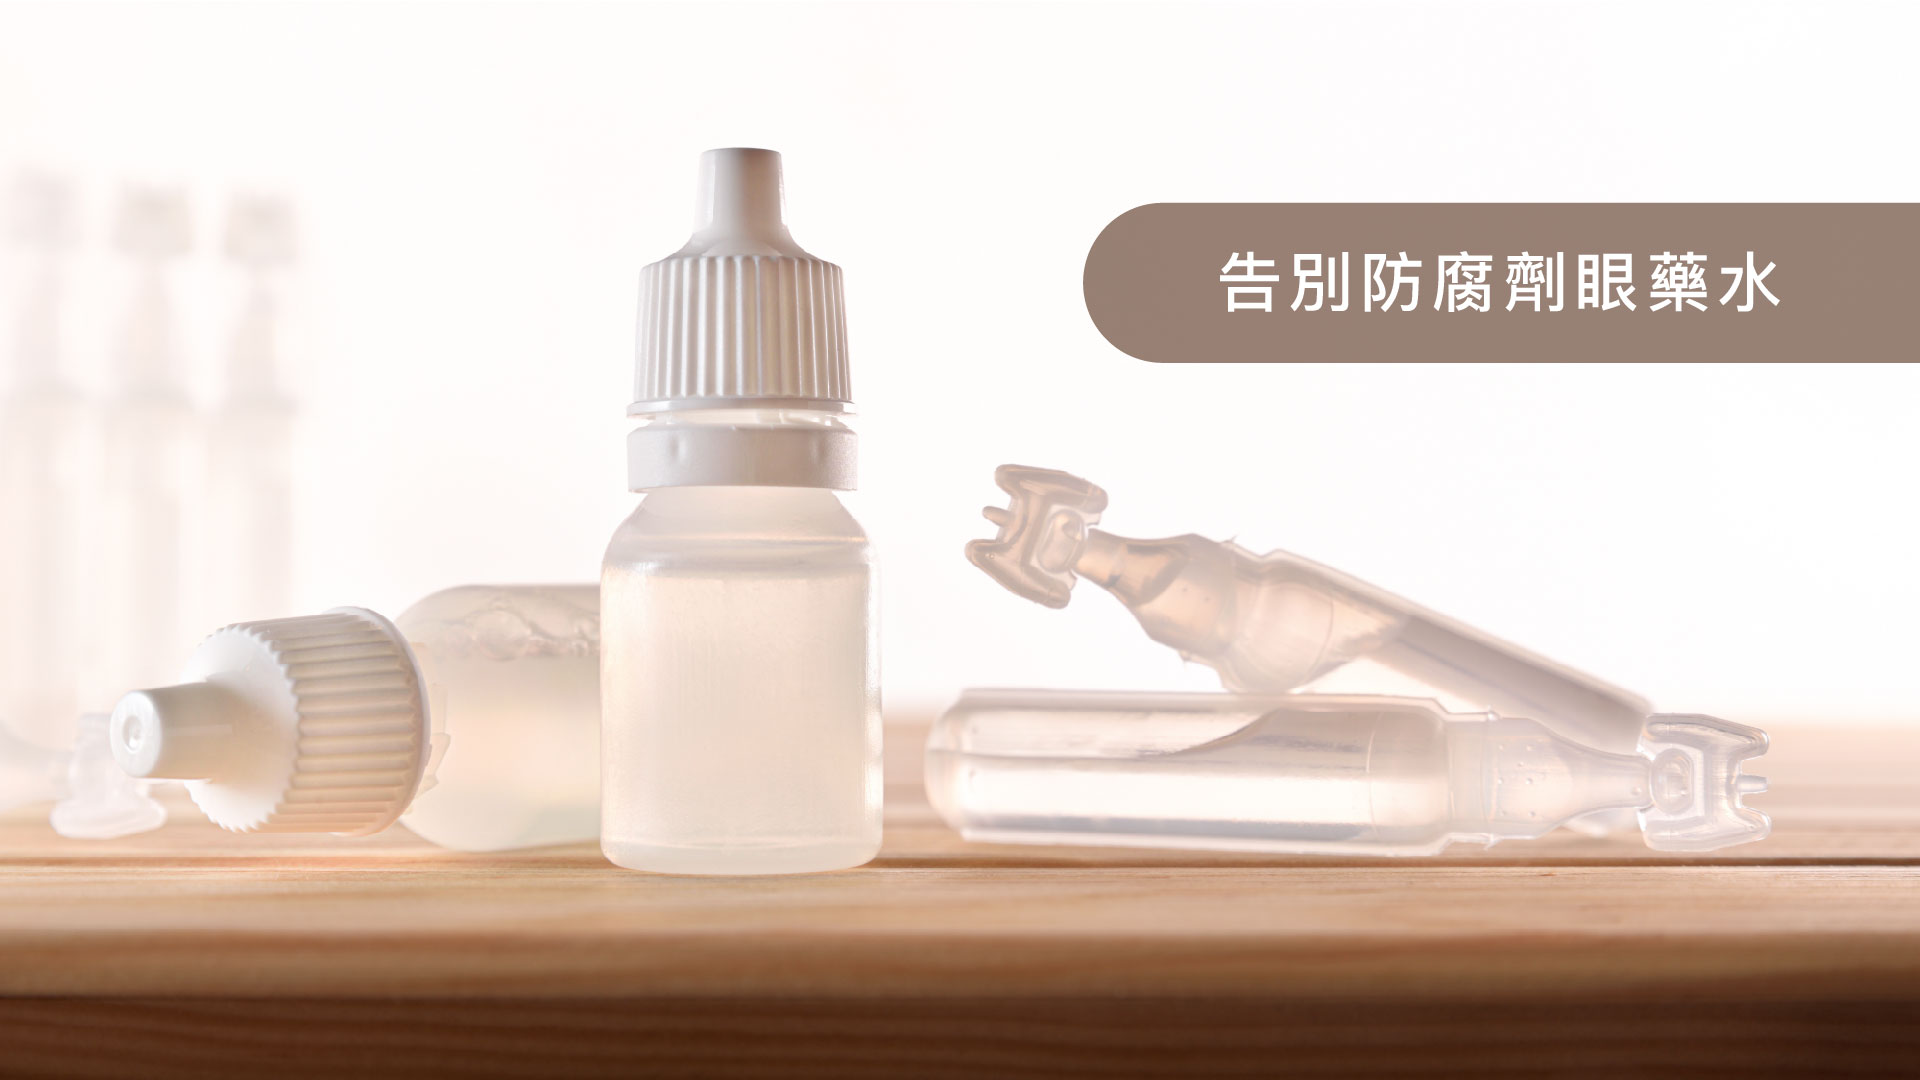 圖片中有幾個透明瓶裝的眼藥水，標籤上寫著「告別防腐劑眼藥水」，強調無防腐劑成分。背景是柔和的白色，營造出乾淨和健康的氛圍。